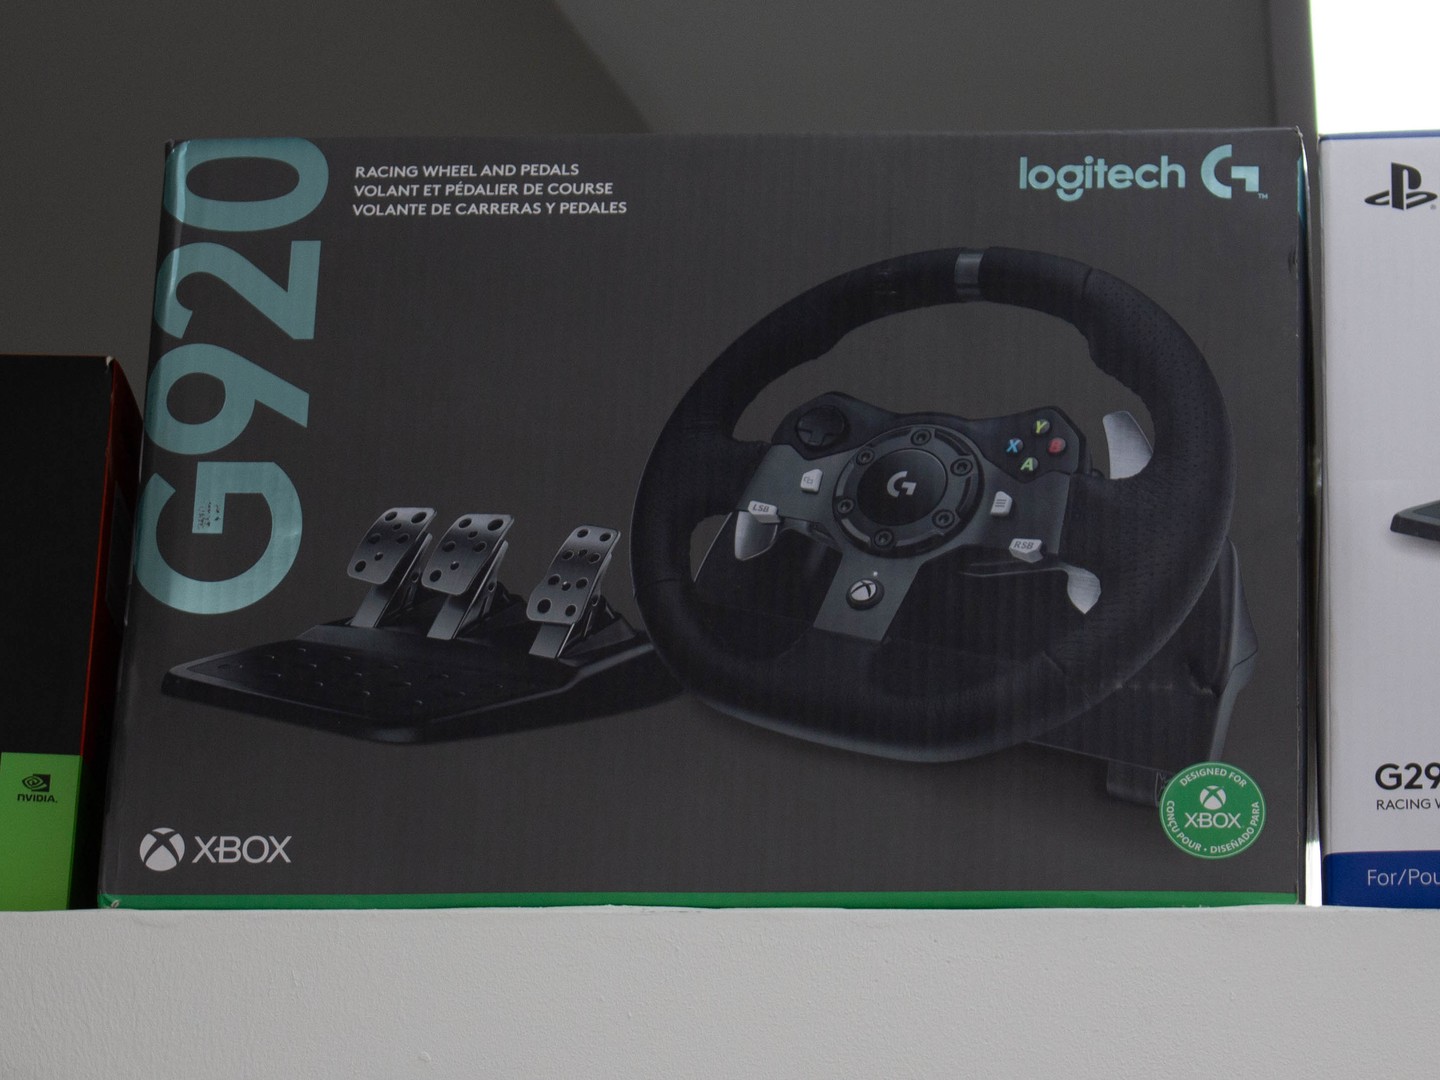 consolas y videojuegos - Volantes Logitech G920 /Volante de carreras para Xbox y PC.